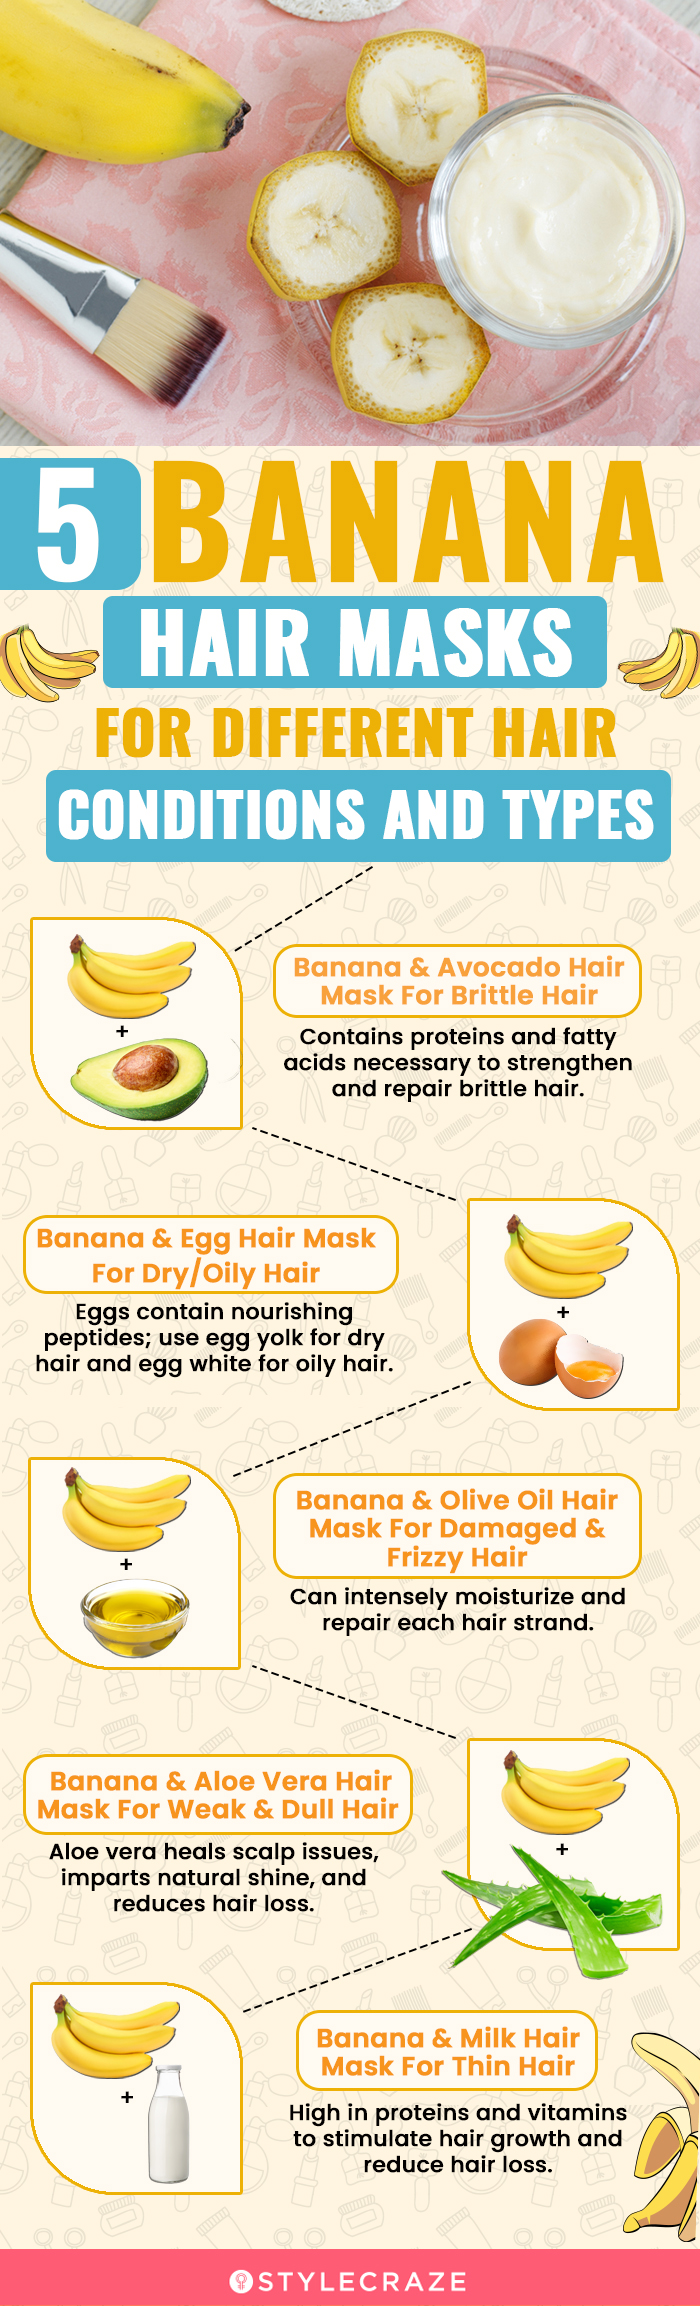 12 Diy Banana Hair Masks For All Hair Types: Benefits + Recipes  